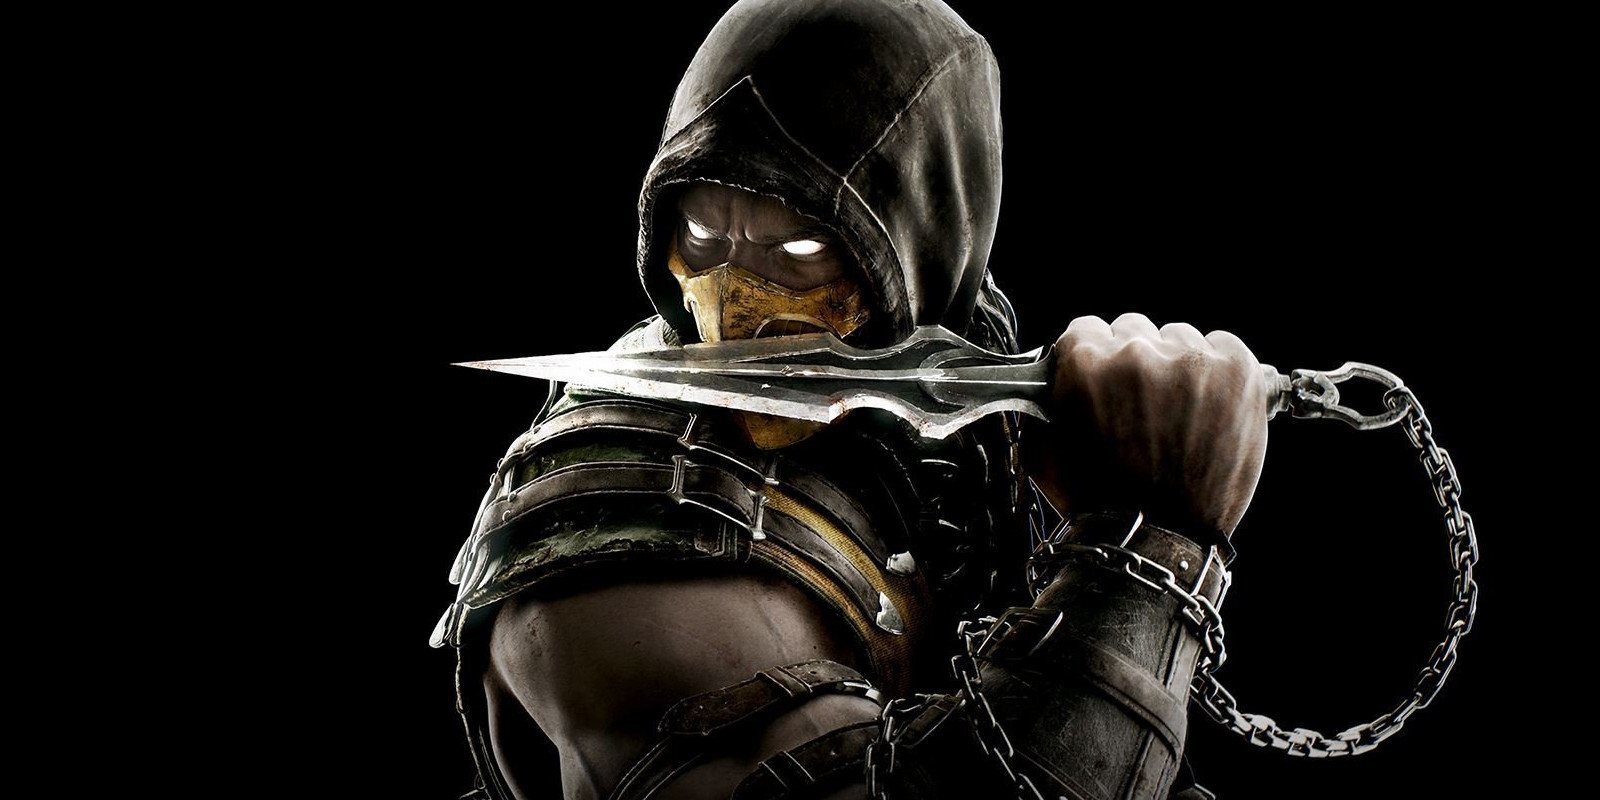 La película de 'Mortal Kombat' continúa expandiendo su plantel: Scorpion y Shan Tsung